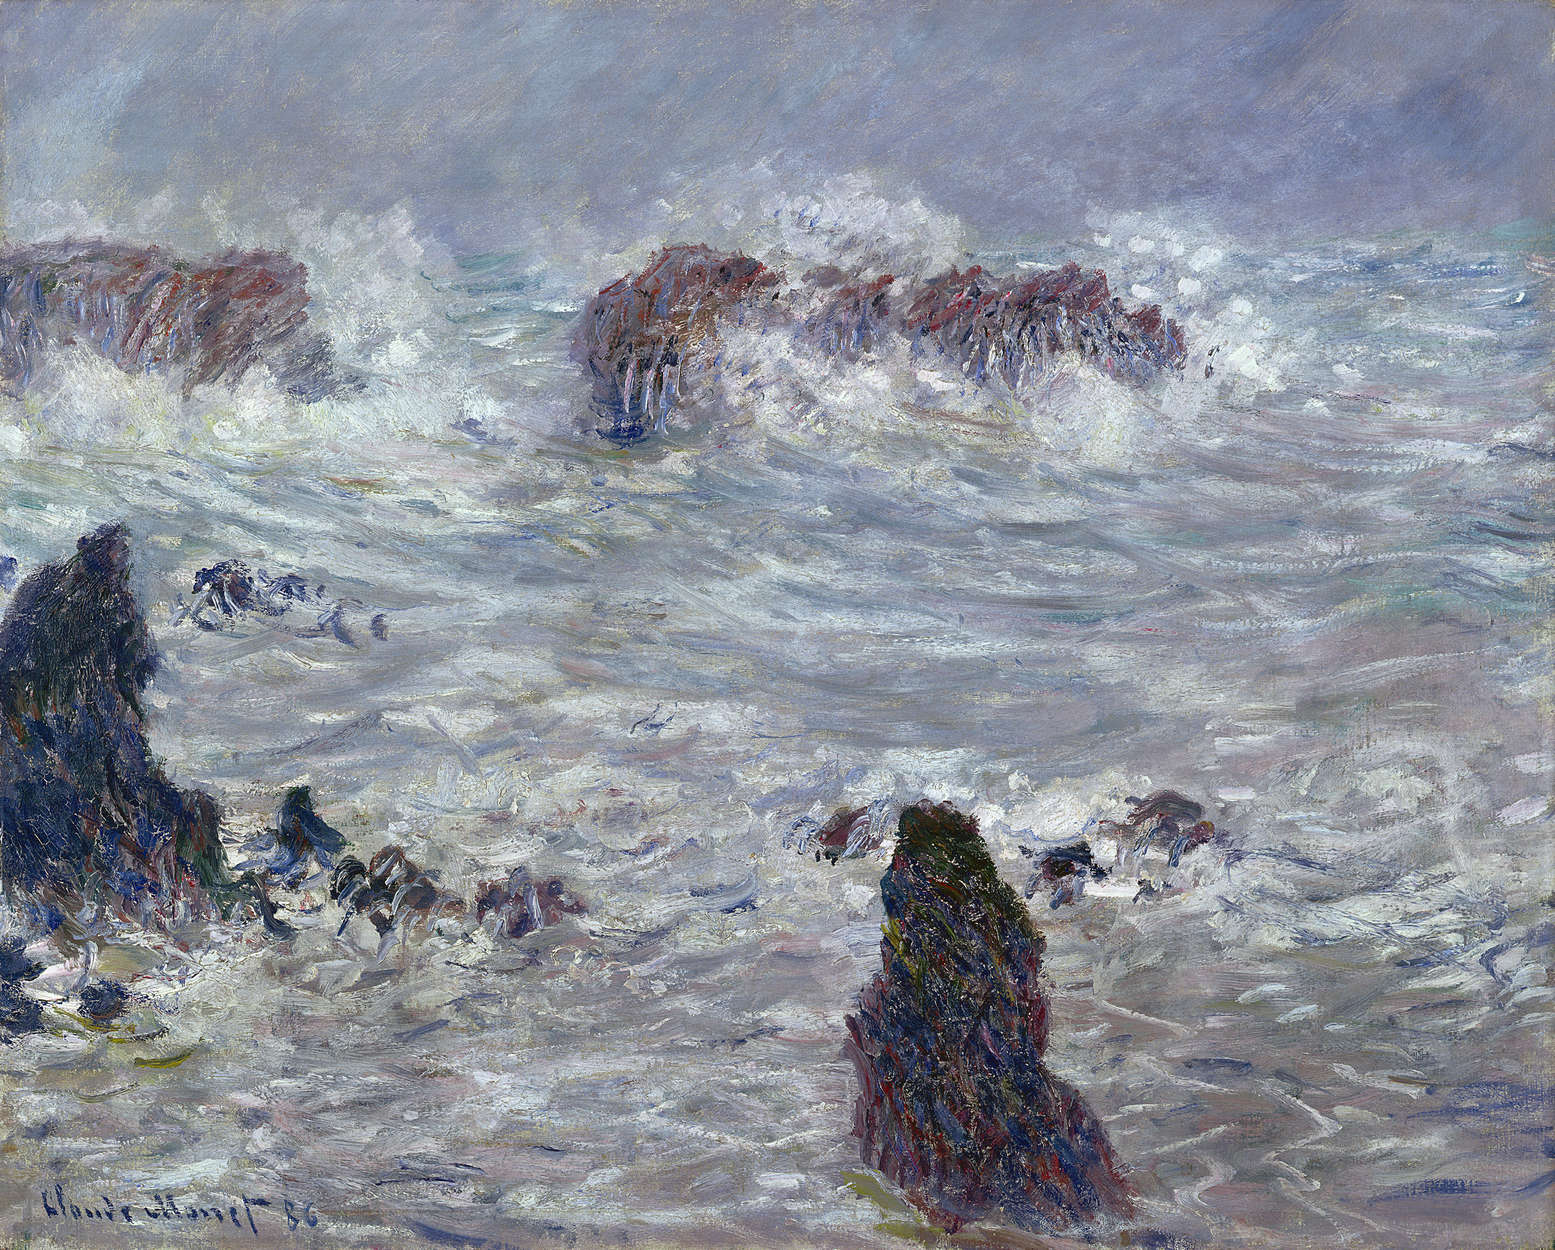             Fotomurali "Tempesta al largo della costa" di Claude Monet
        